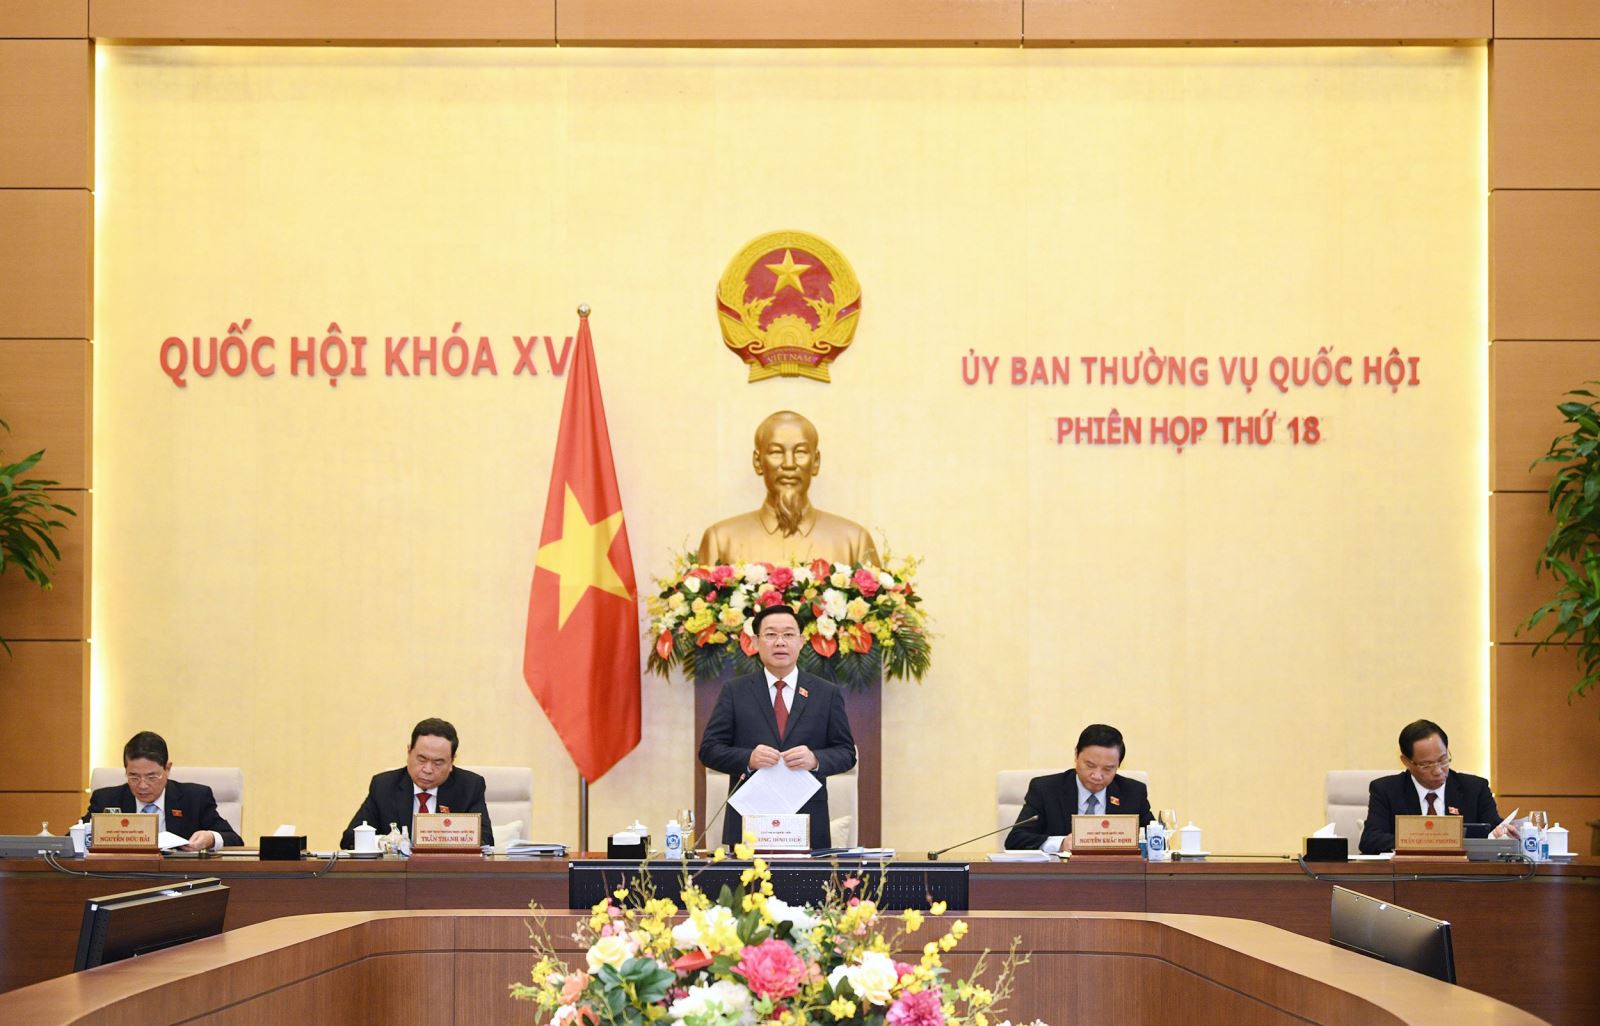 Đồng chí Vương Đình Huệ - Chủ tịch Quốc hội và các đồng chí Phó Chủ tịch Quốc hội đã chủ trì và điều hành Phiên họp thứ 18 của Ủy ban Thường vụ Quốc hội.